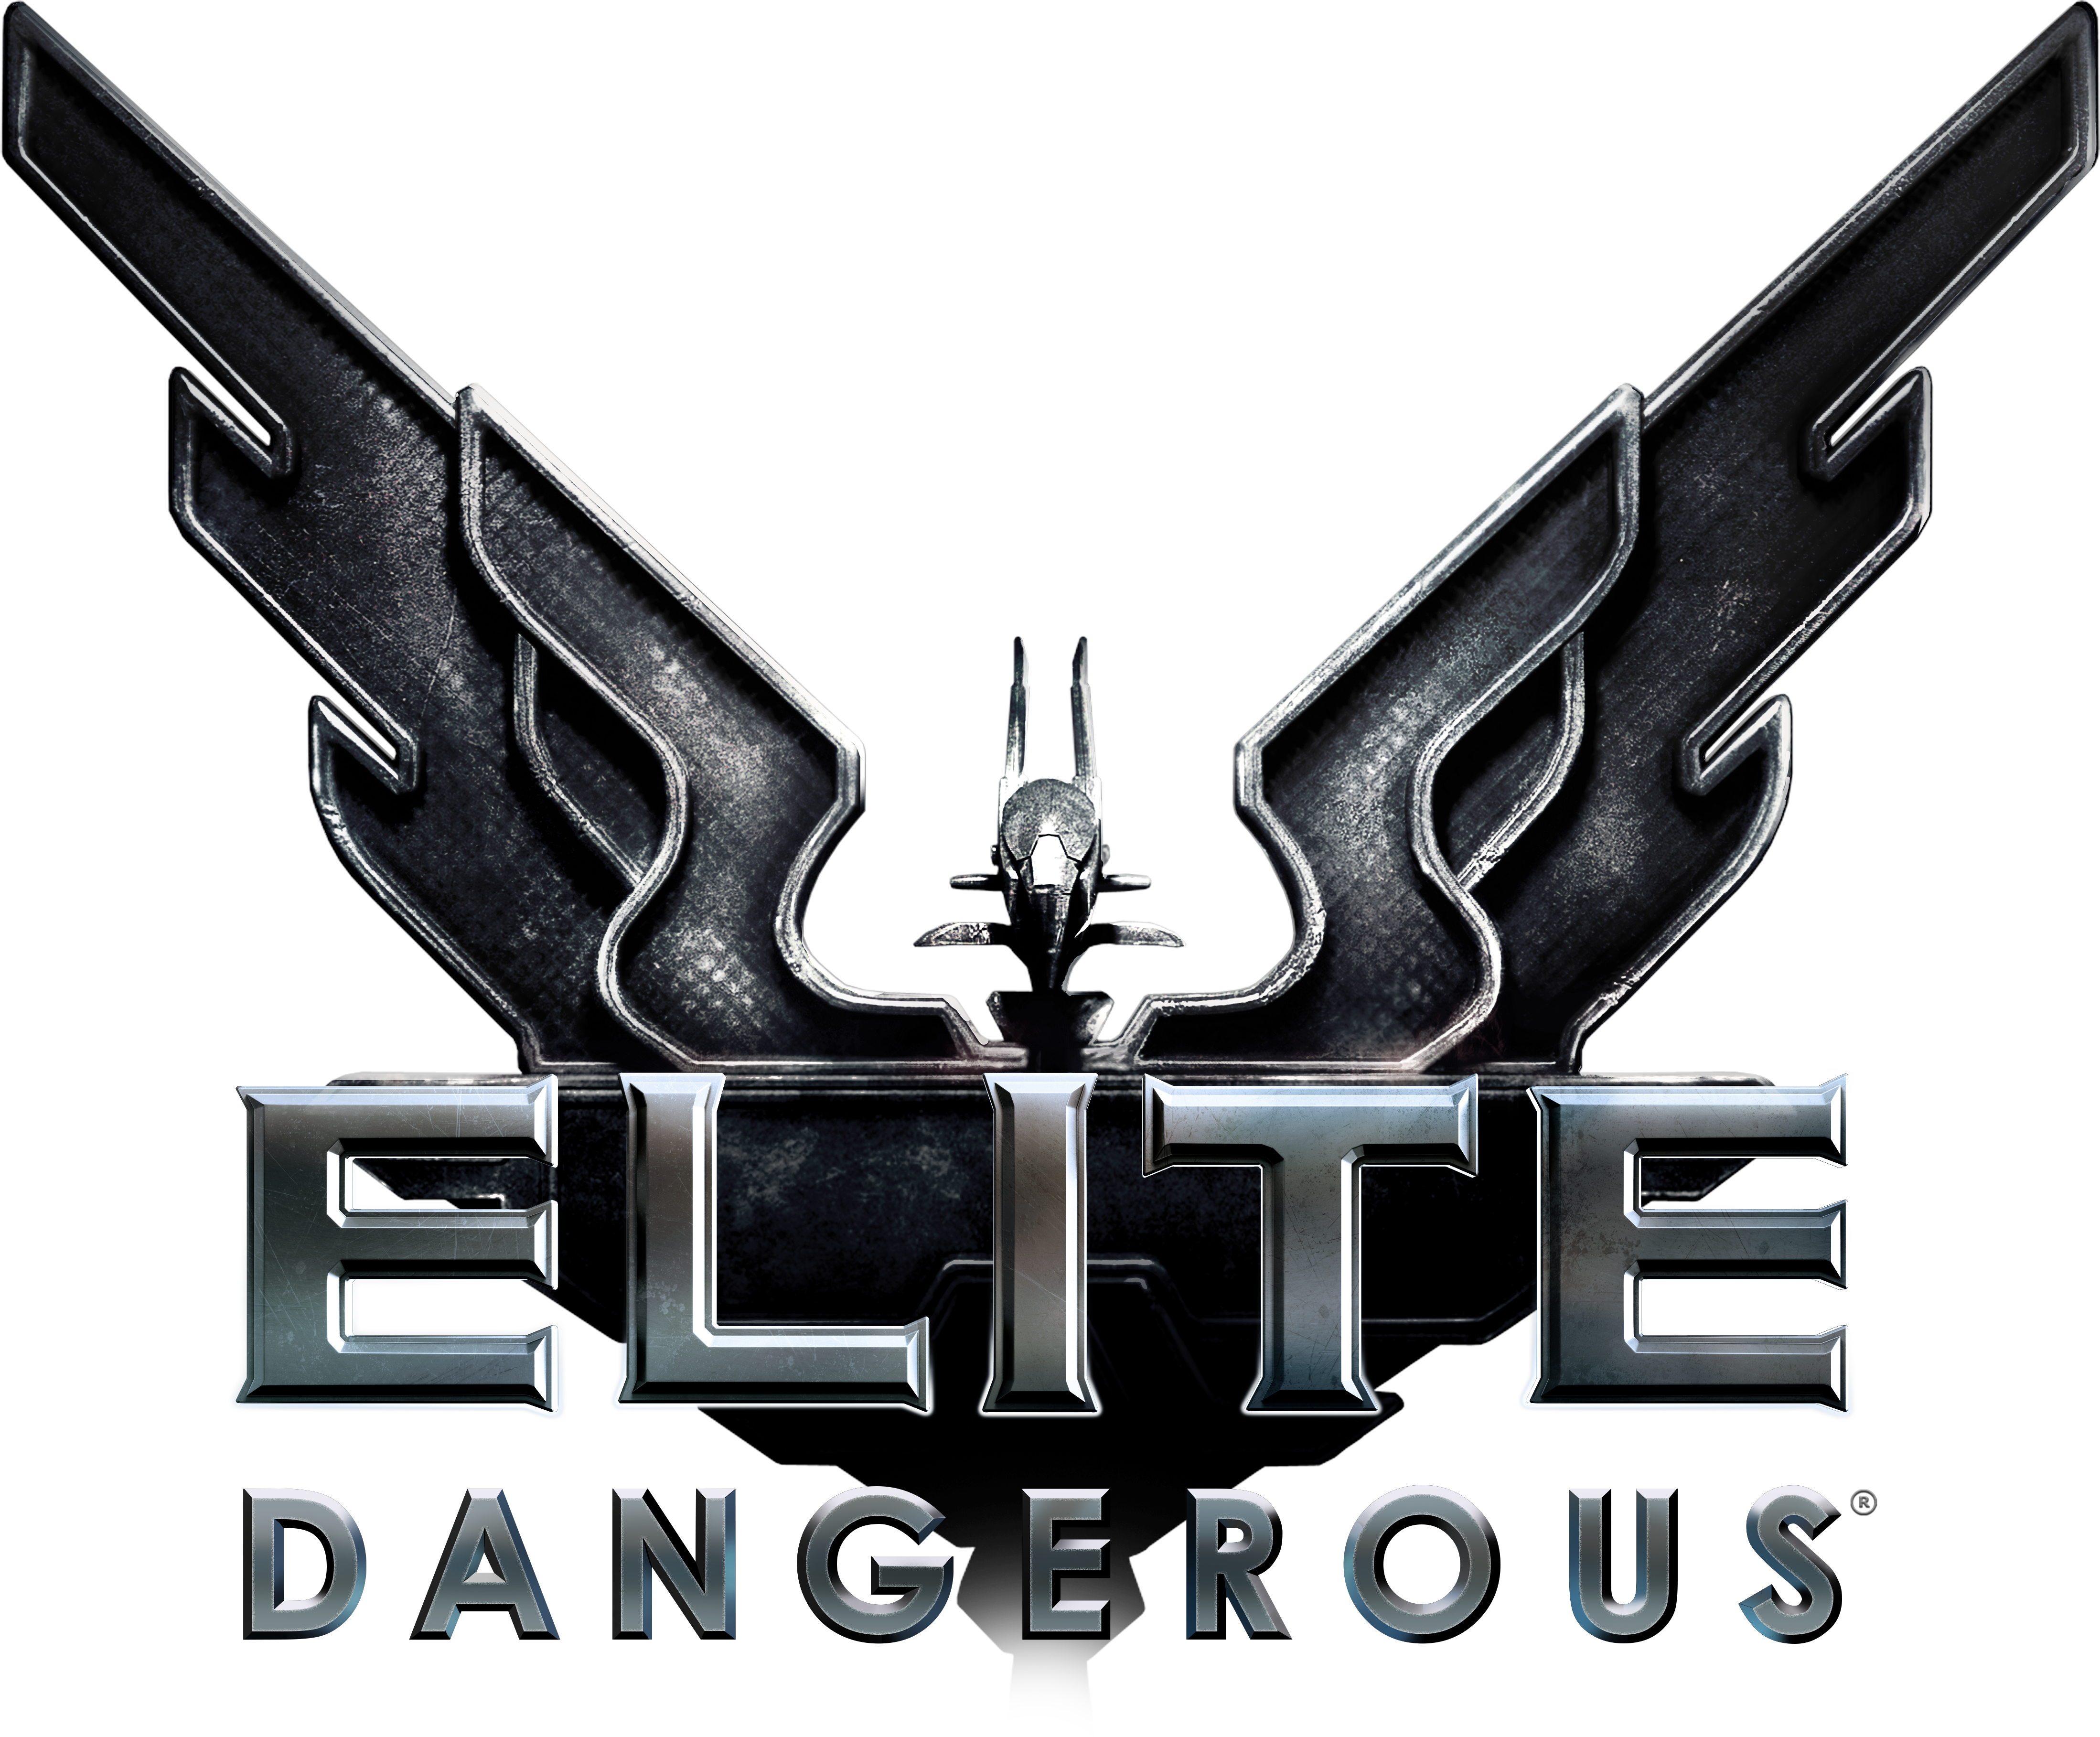 Elite Dangerous - SteamGridDB